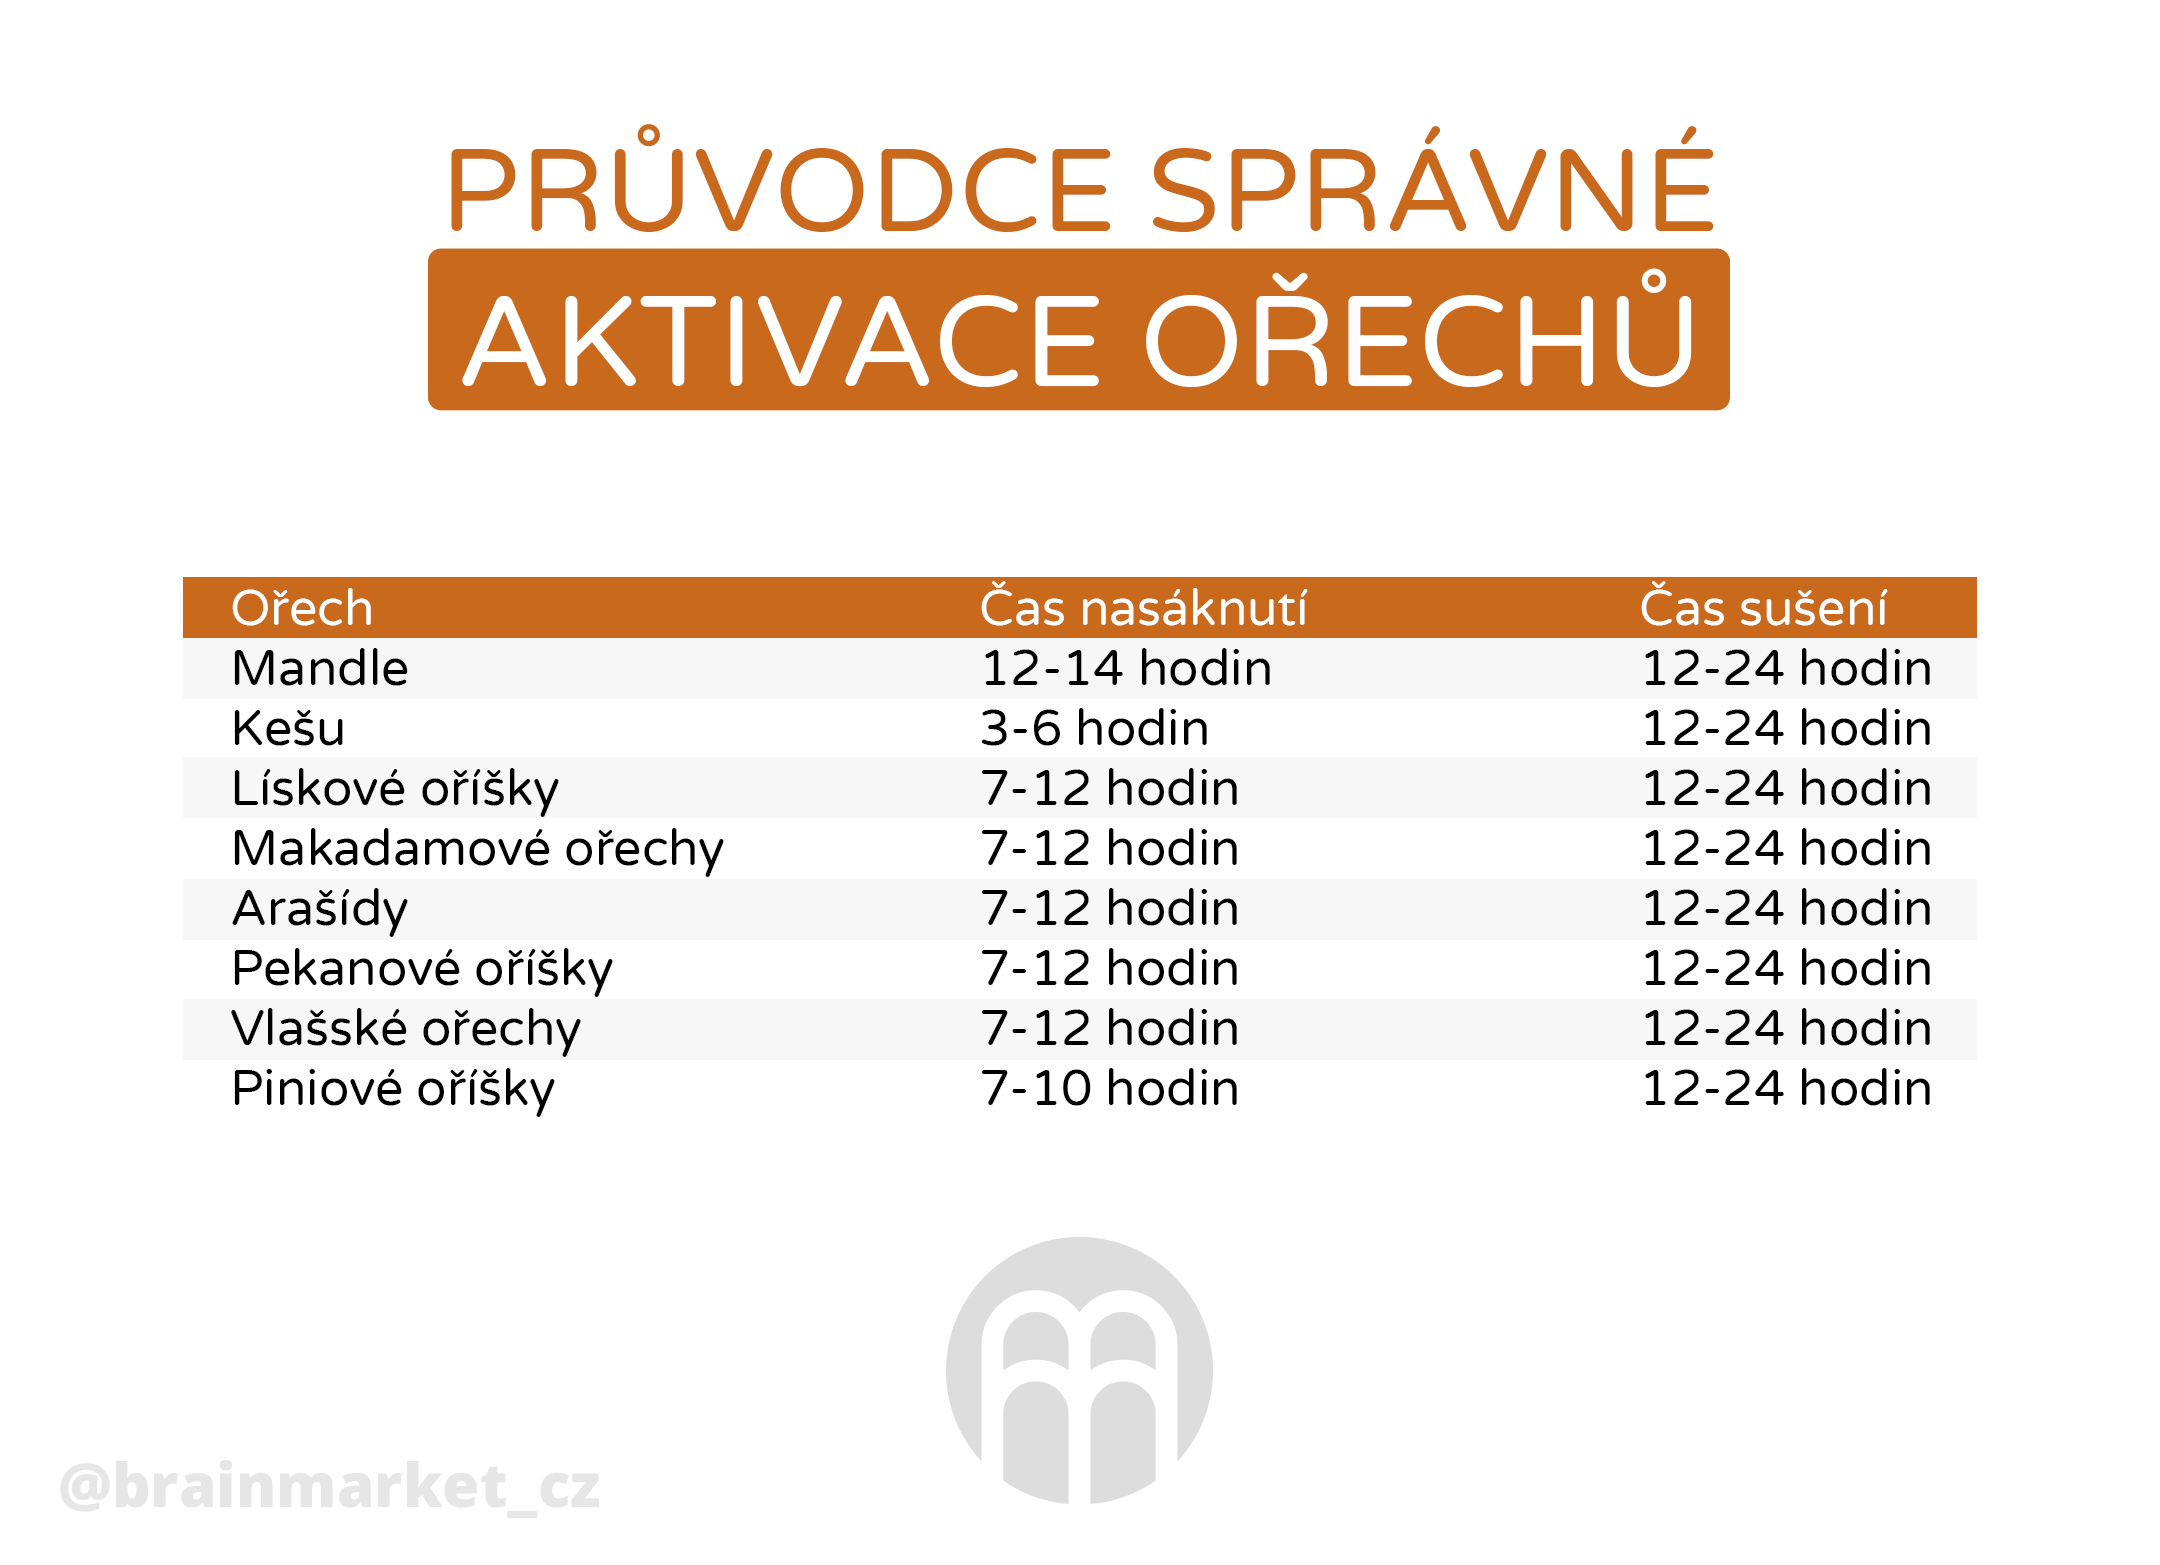 pruvodce_spravne_aktivace_orechu_v2_infografika_brainmarket_cz